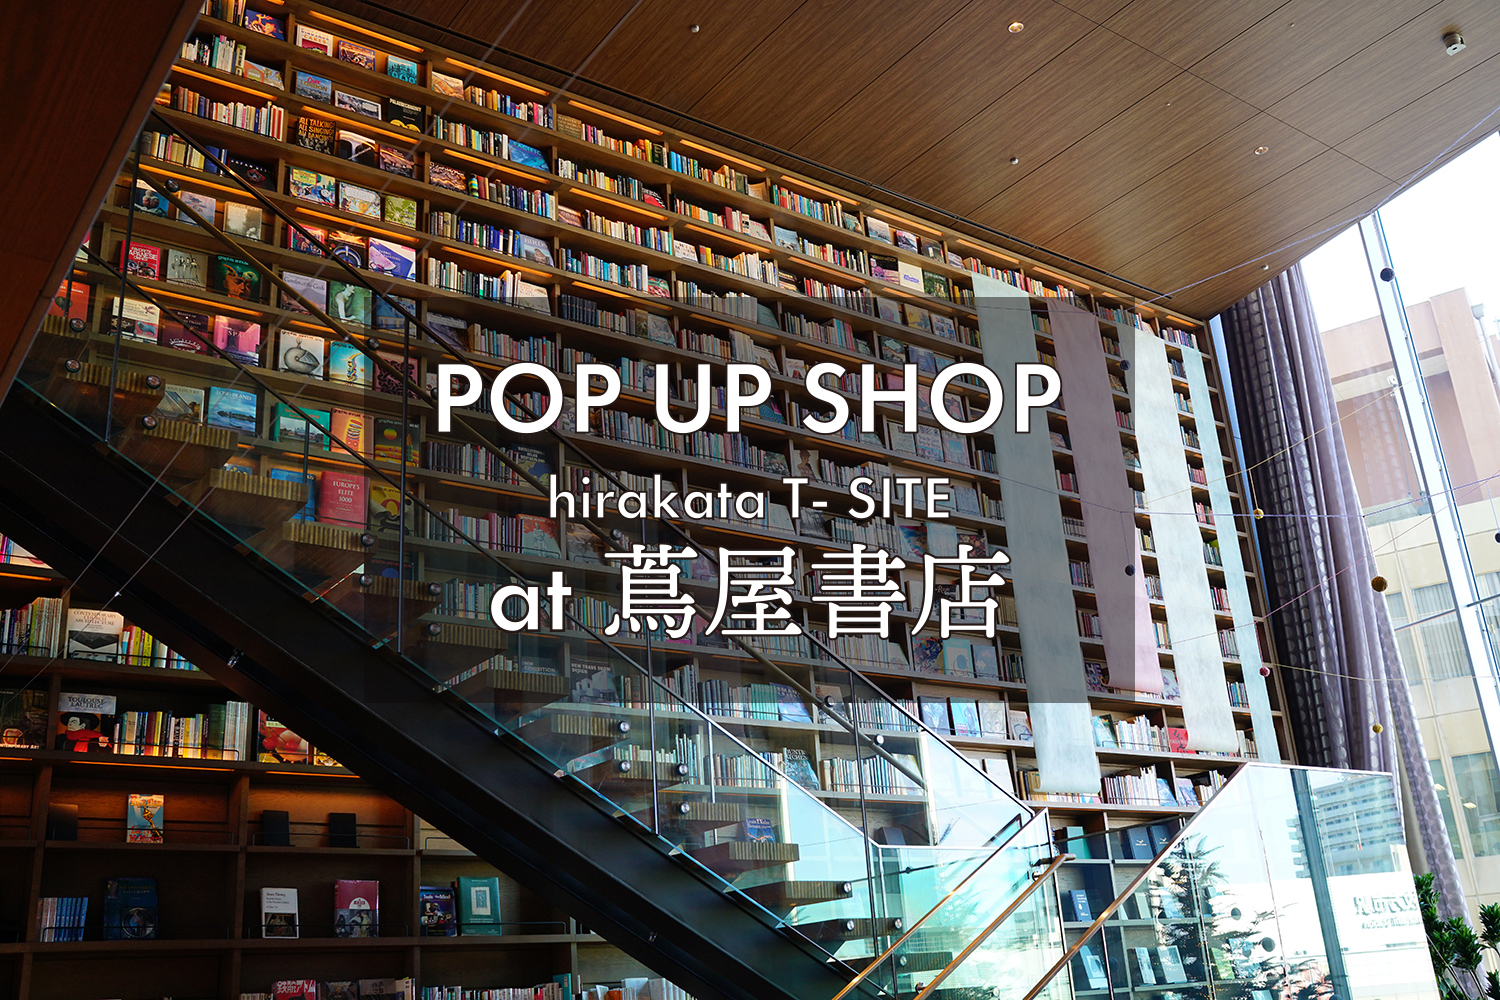 大阪の枚方T-SITE蔦屋書店にて、POP UP 開催中です♩